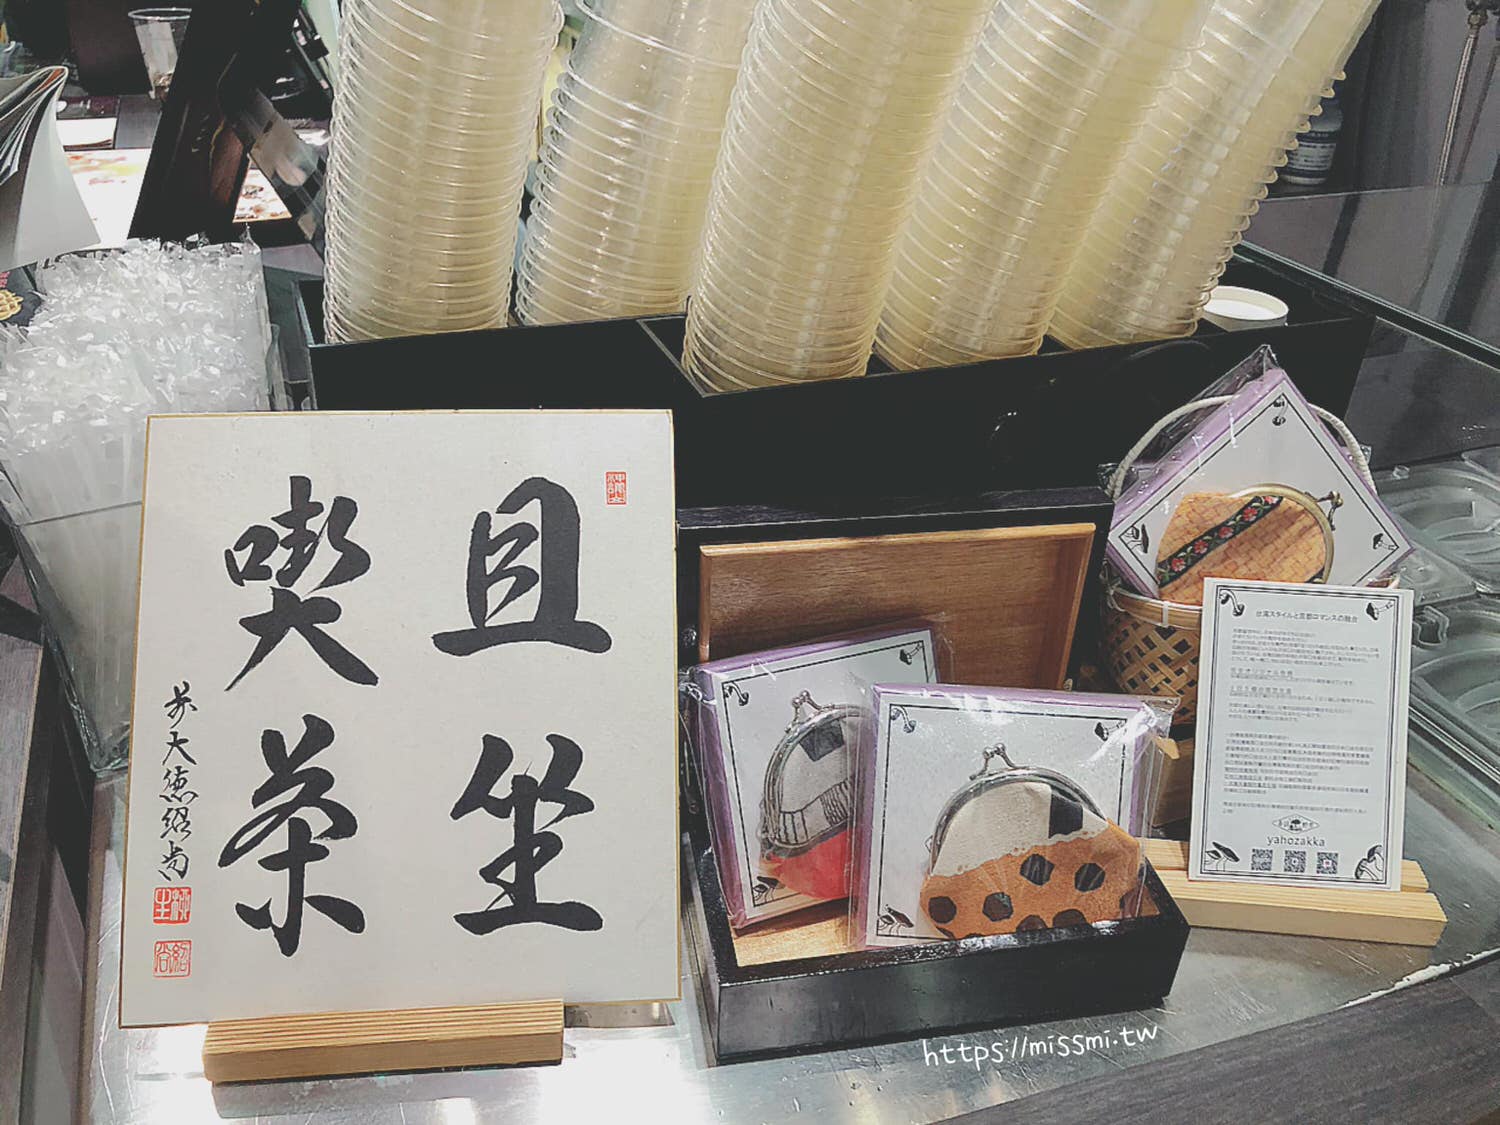 Bobii Frutii,京都抹茶,小山園,抹茶,水果茶,永康街,珍珠,珍珠奶茶,食尚玩家